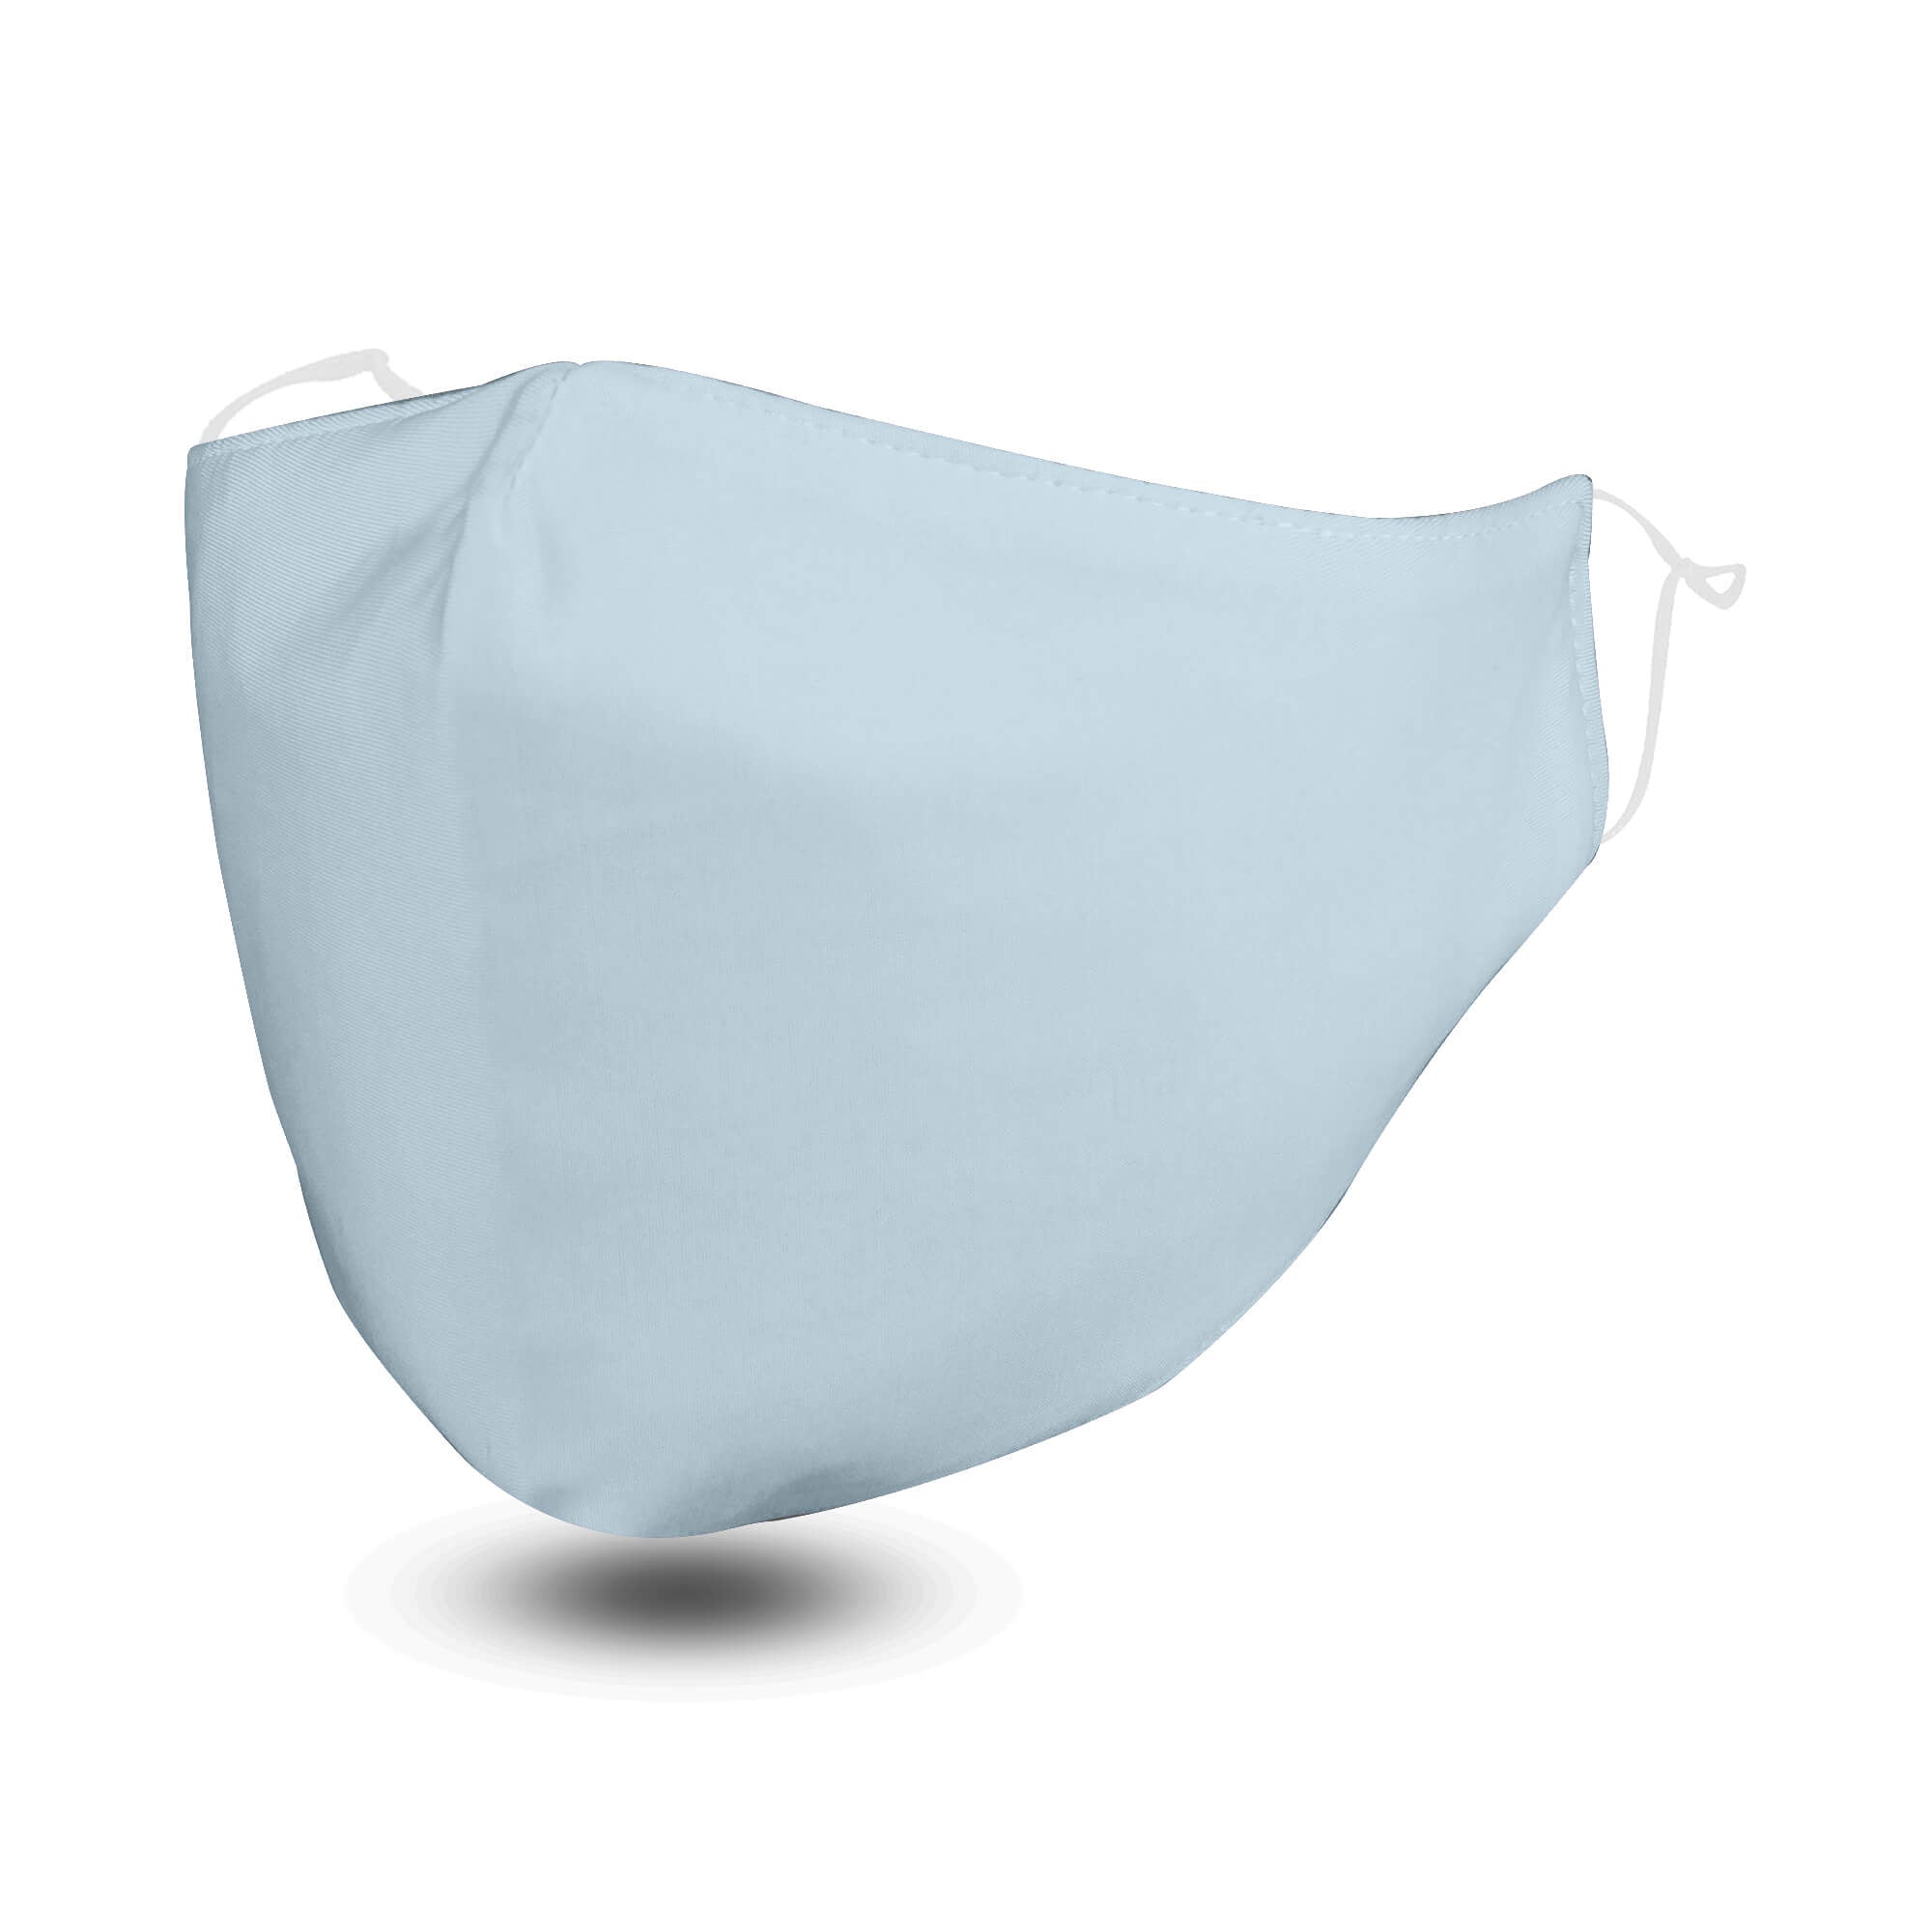 Blue FLOWZOOM Face Mask with Filter Pocket - Soft & Adjustable